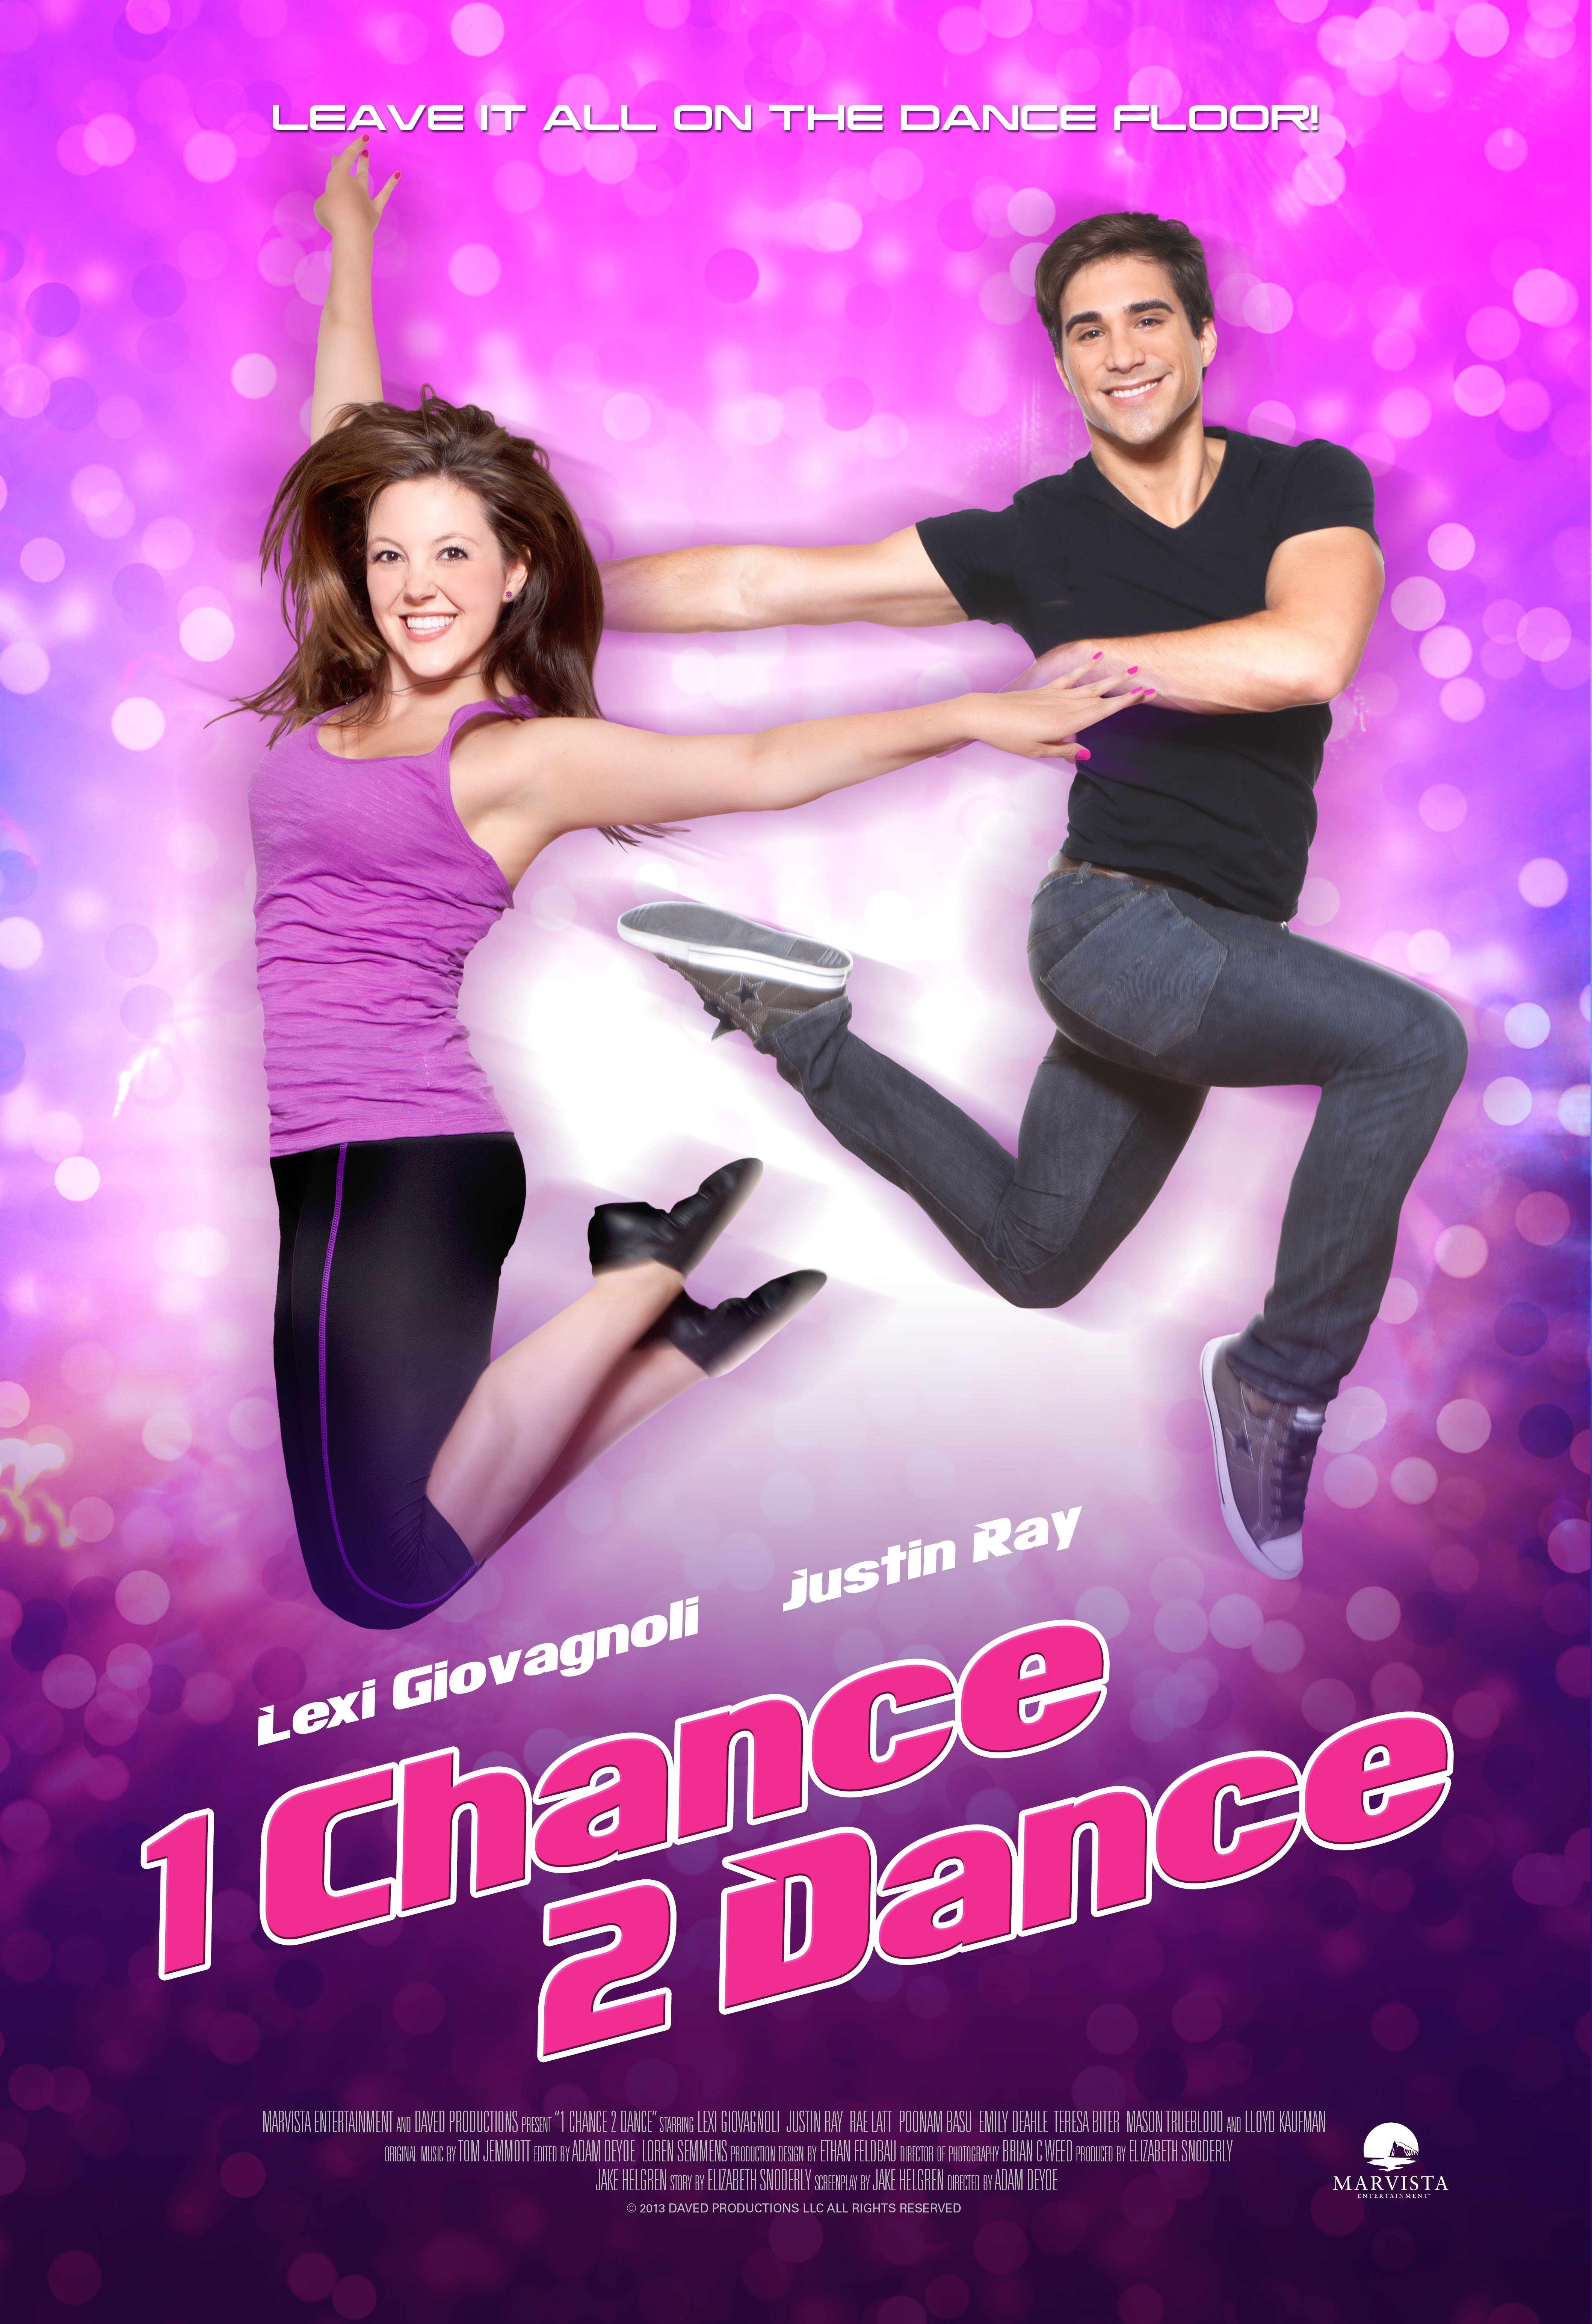 1 Chance 2 Dance (2014) Screenshot 1 